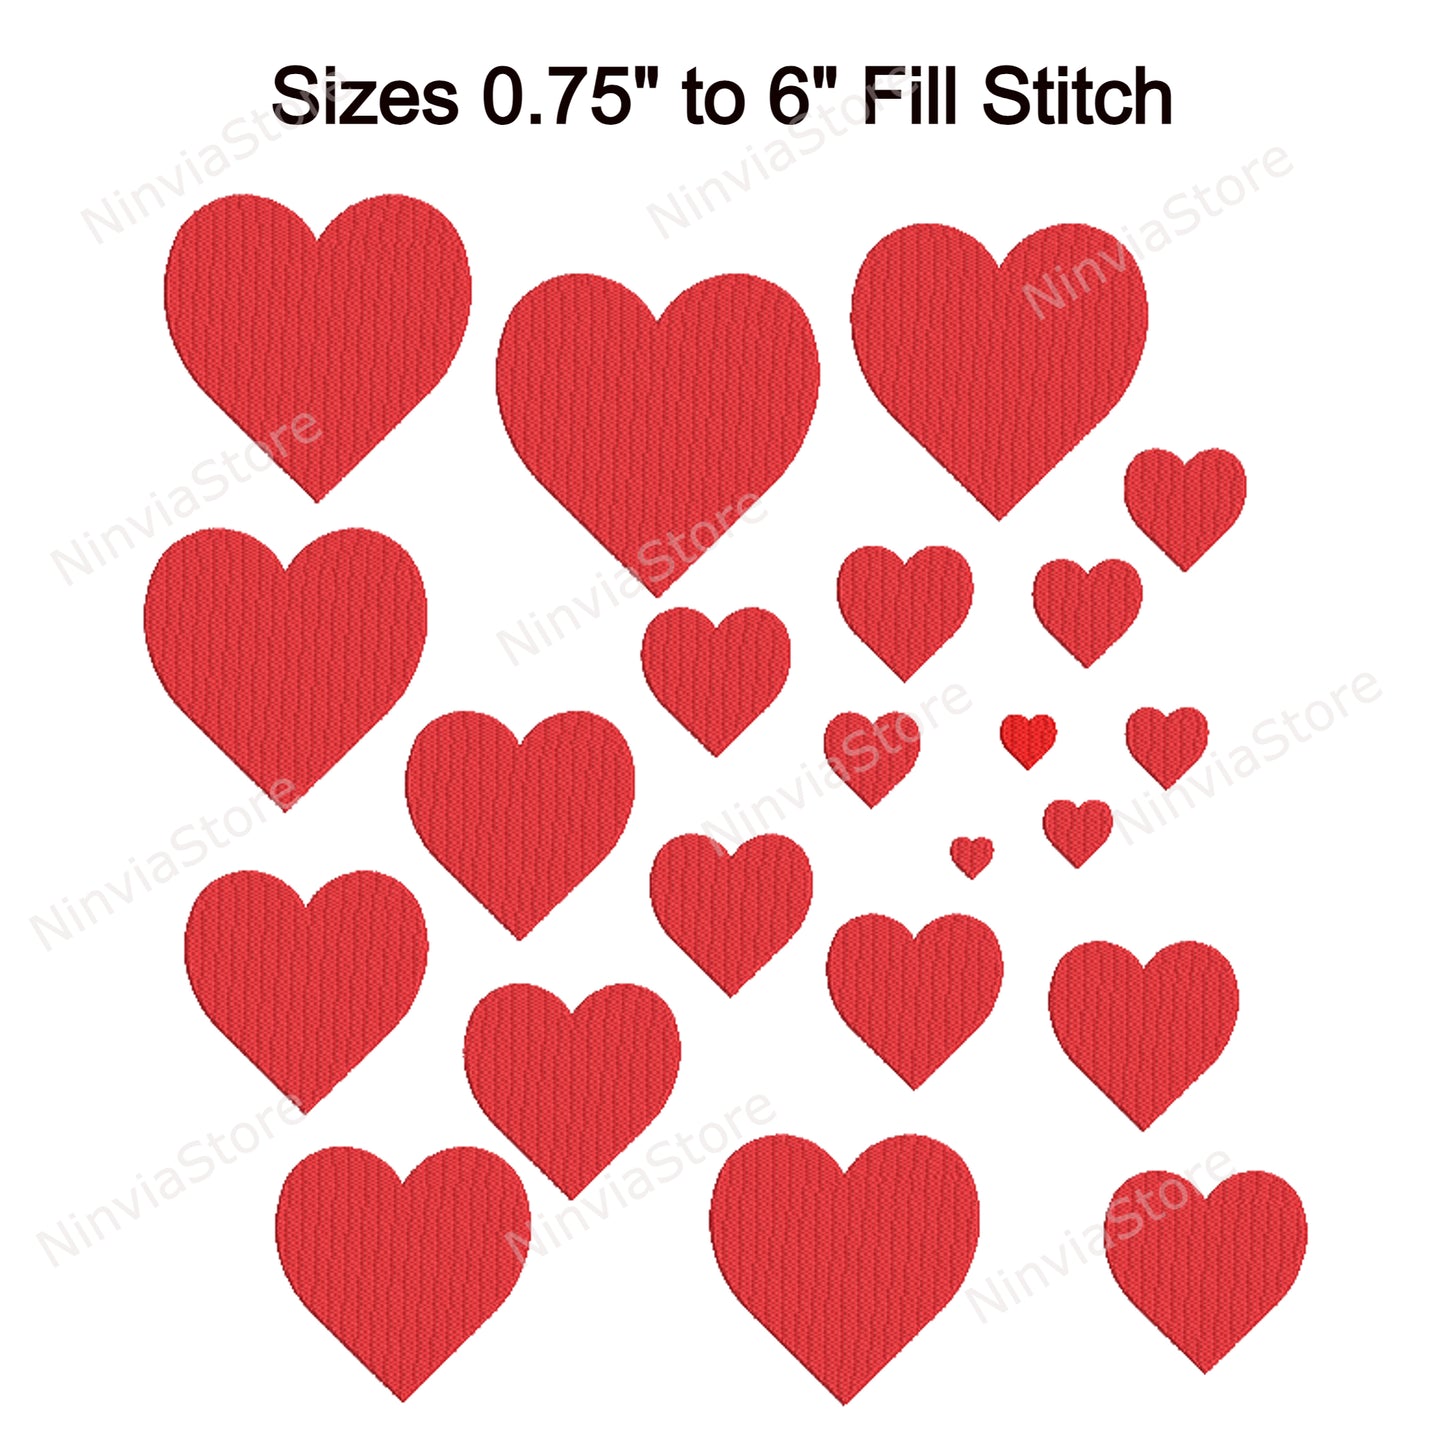 Herz-Stickerei-Design, Herz-Maschinenstickerei, Valentinstag, Herz-Stickmuster, digitaler Sofort-Download, 24 Größen, 8 Formate